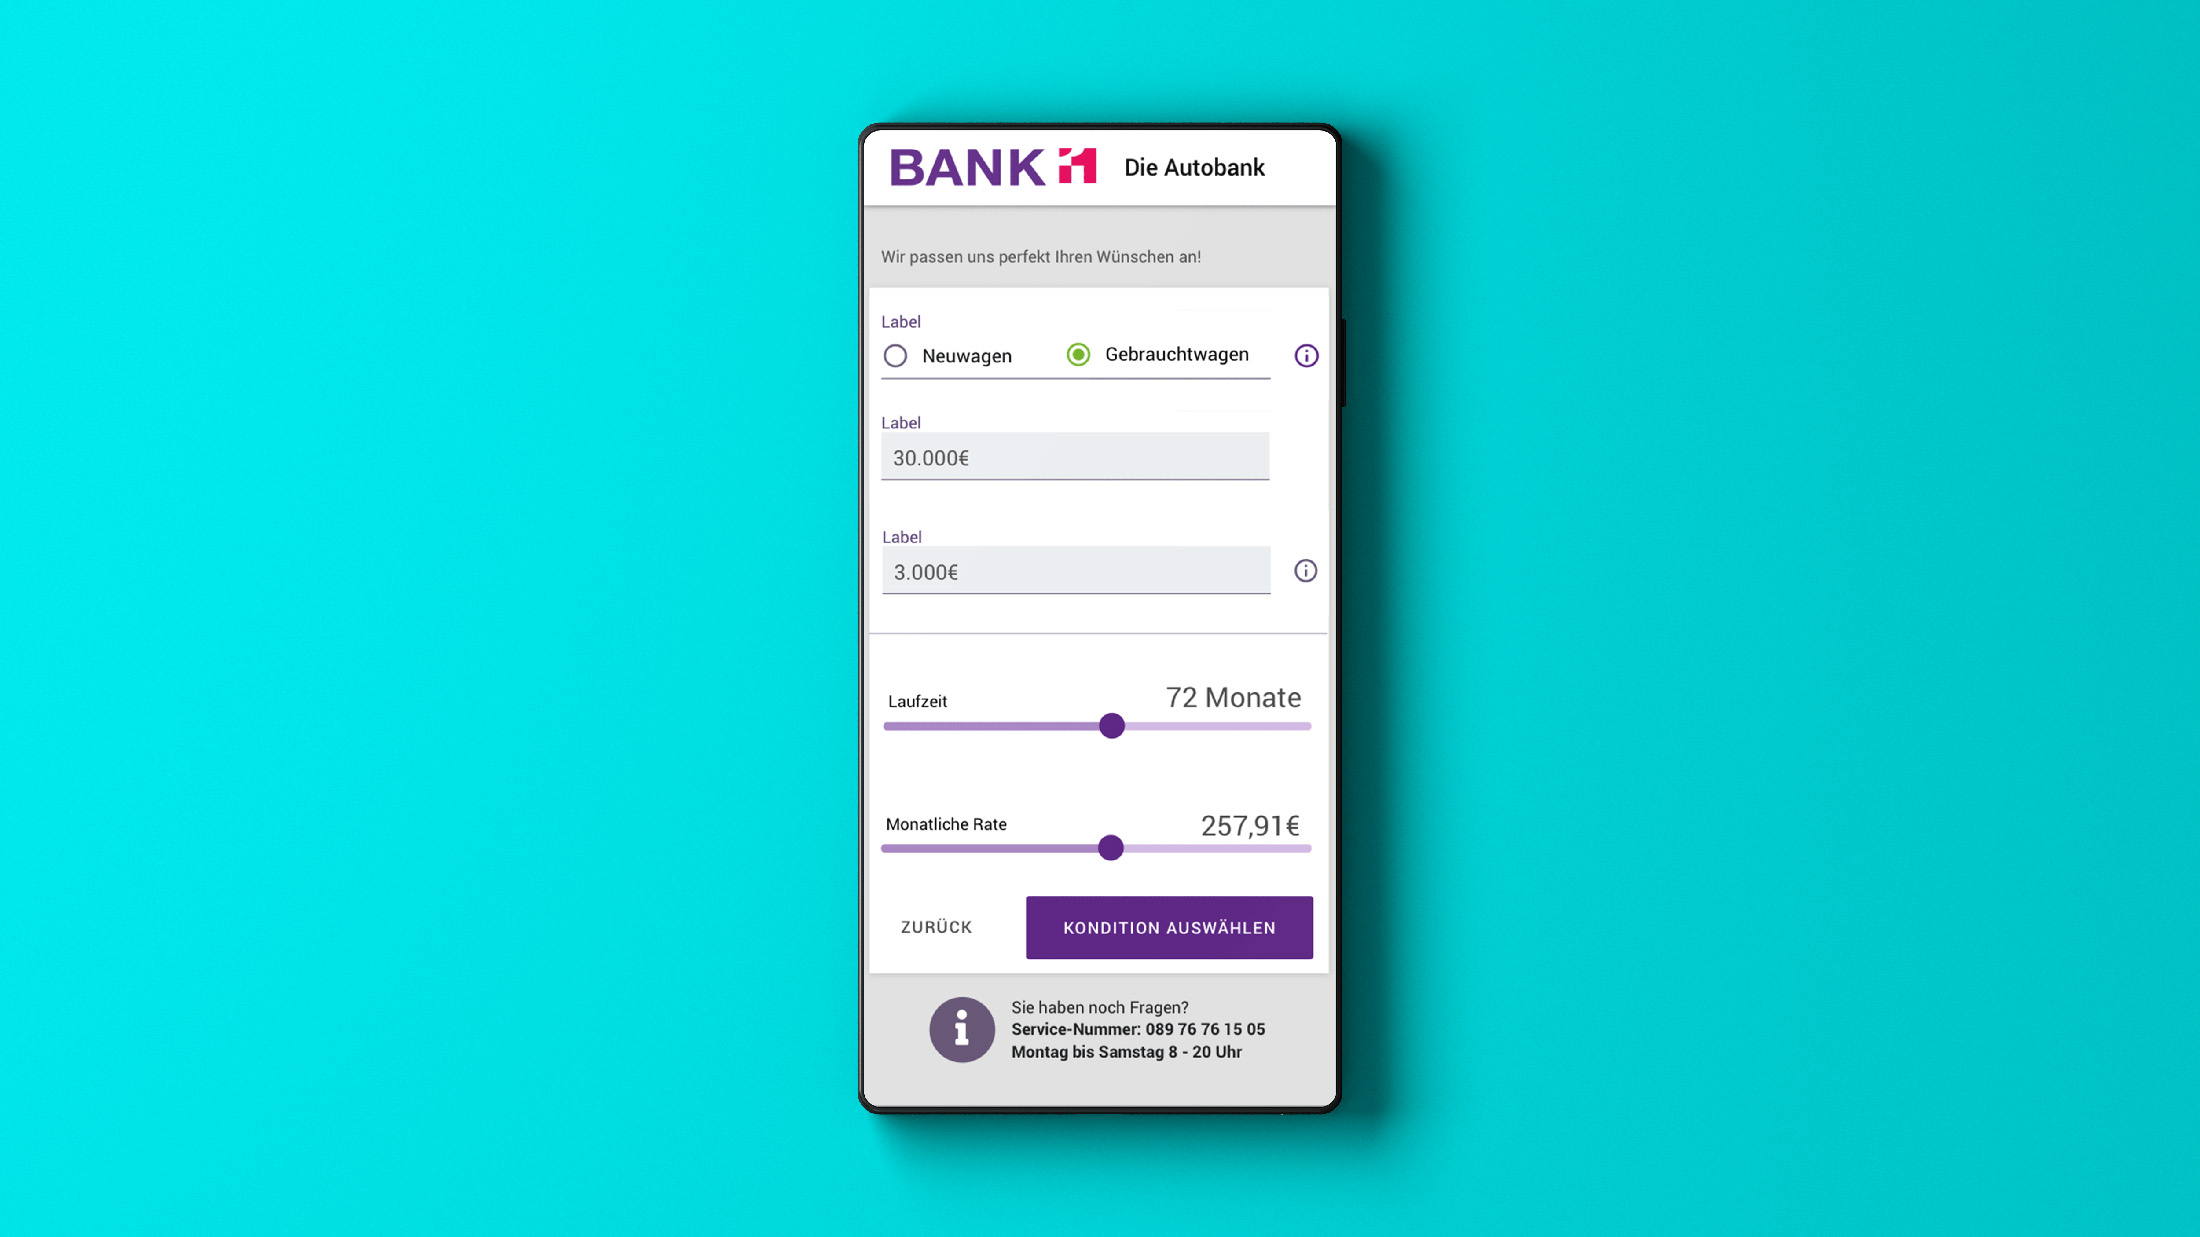 Ein Smartphone vor türkis-blauem Hintergrund. Auf dem Bildschirm ist das Formular einer Banking-App zu sehen.